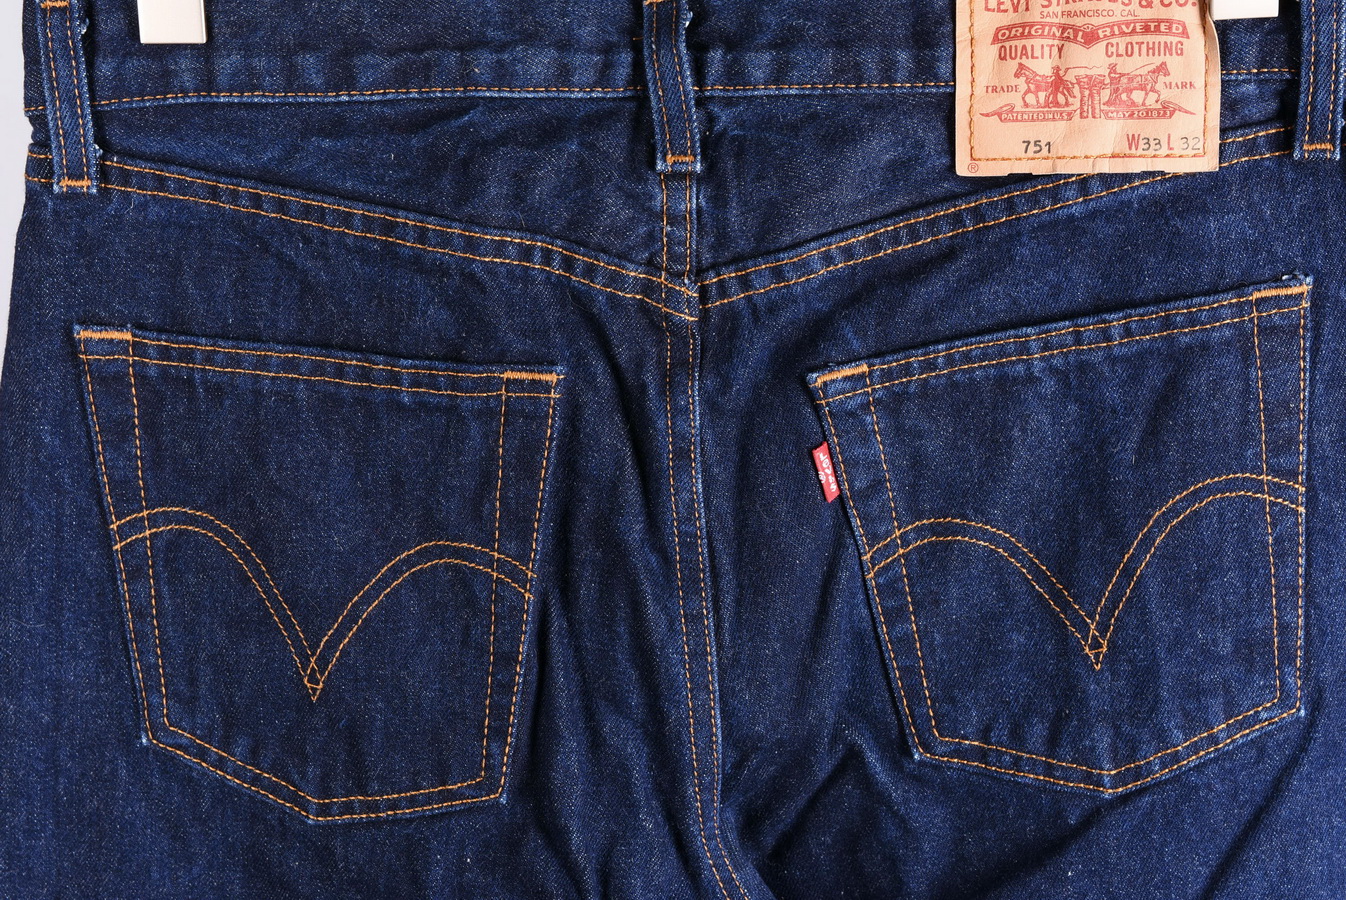 levis 751 jeans